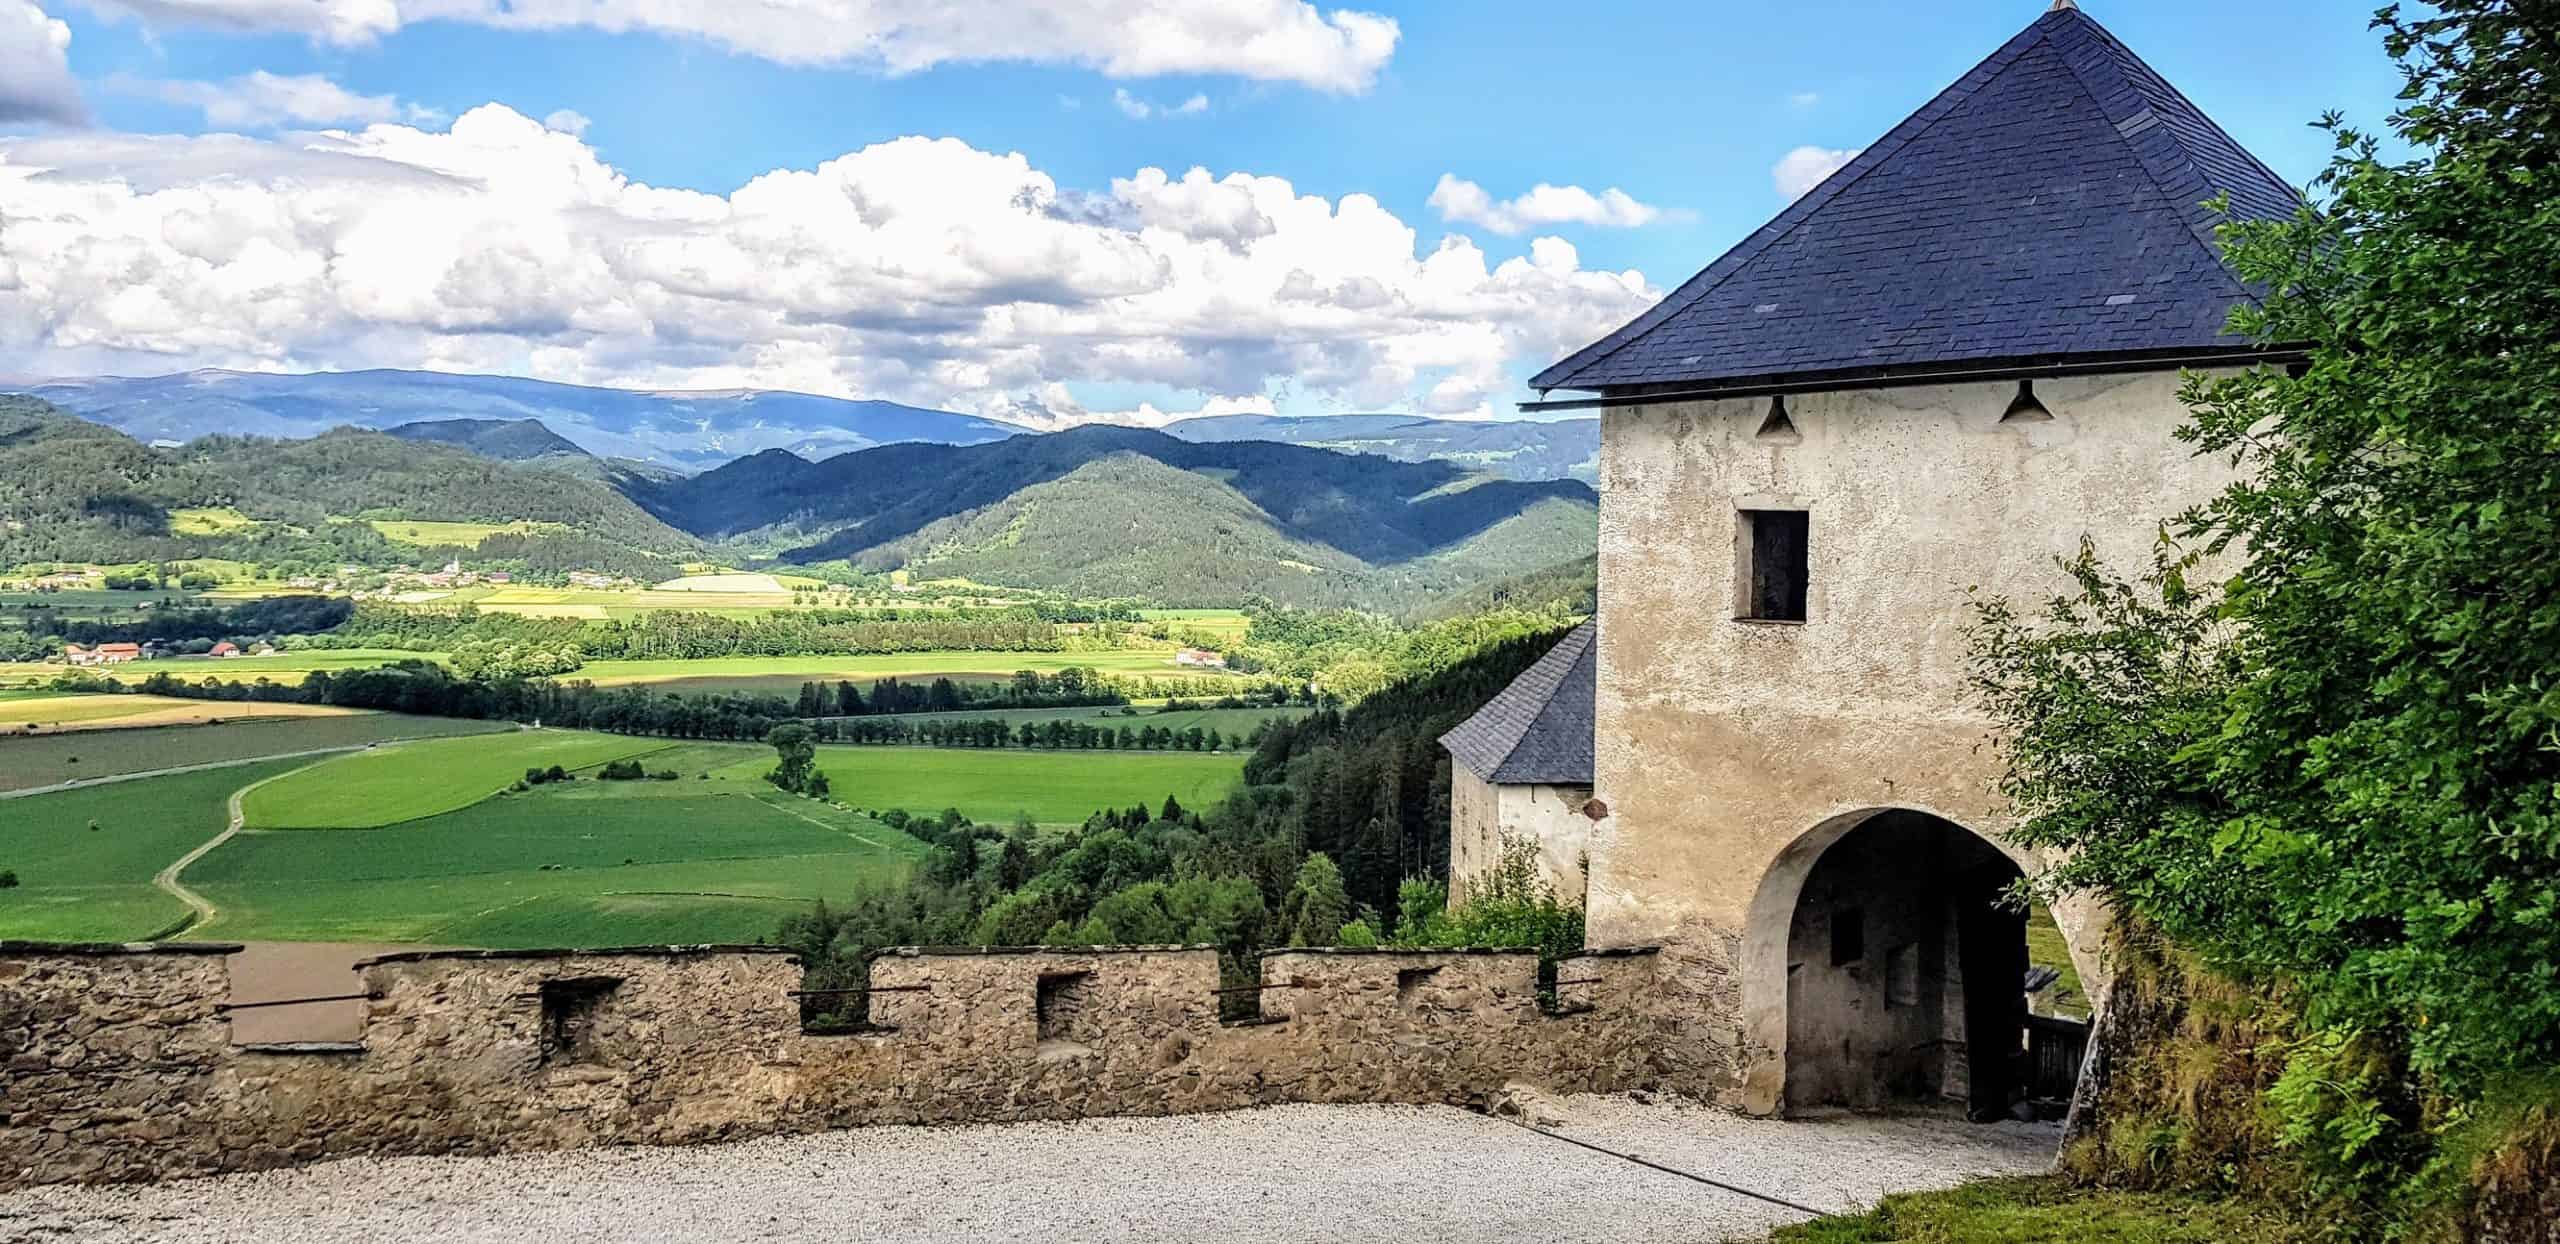 Löwentor Rückseite mit Blick auf die Kärntner Landschaft - Mittelalter-Ausflugsziel Burg Hochosterwitz in Kärnten